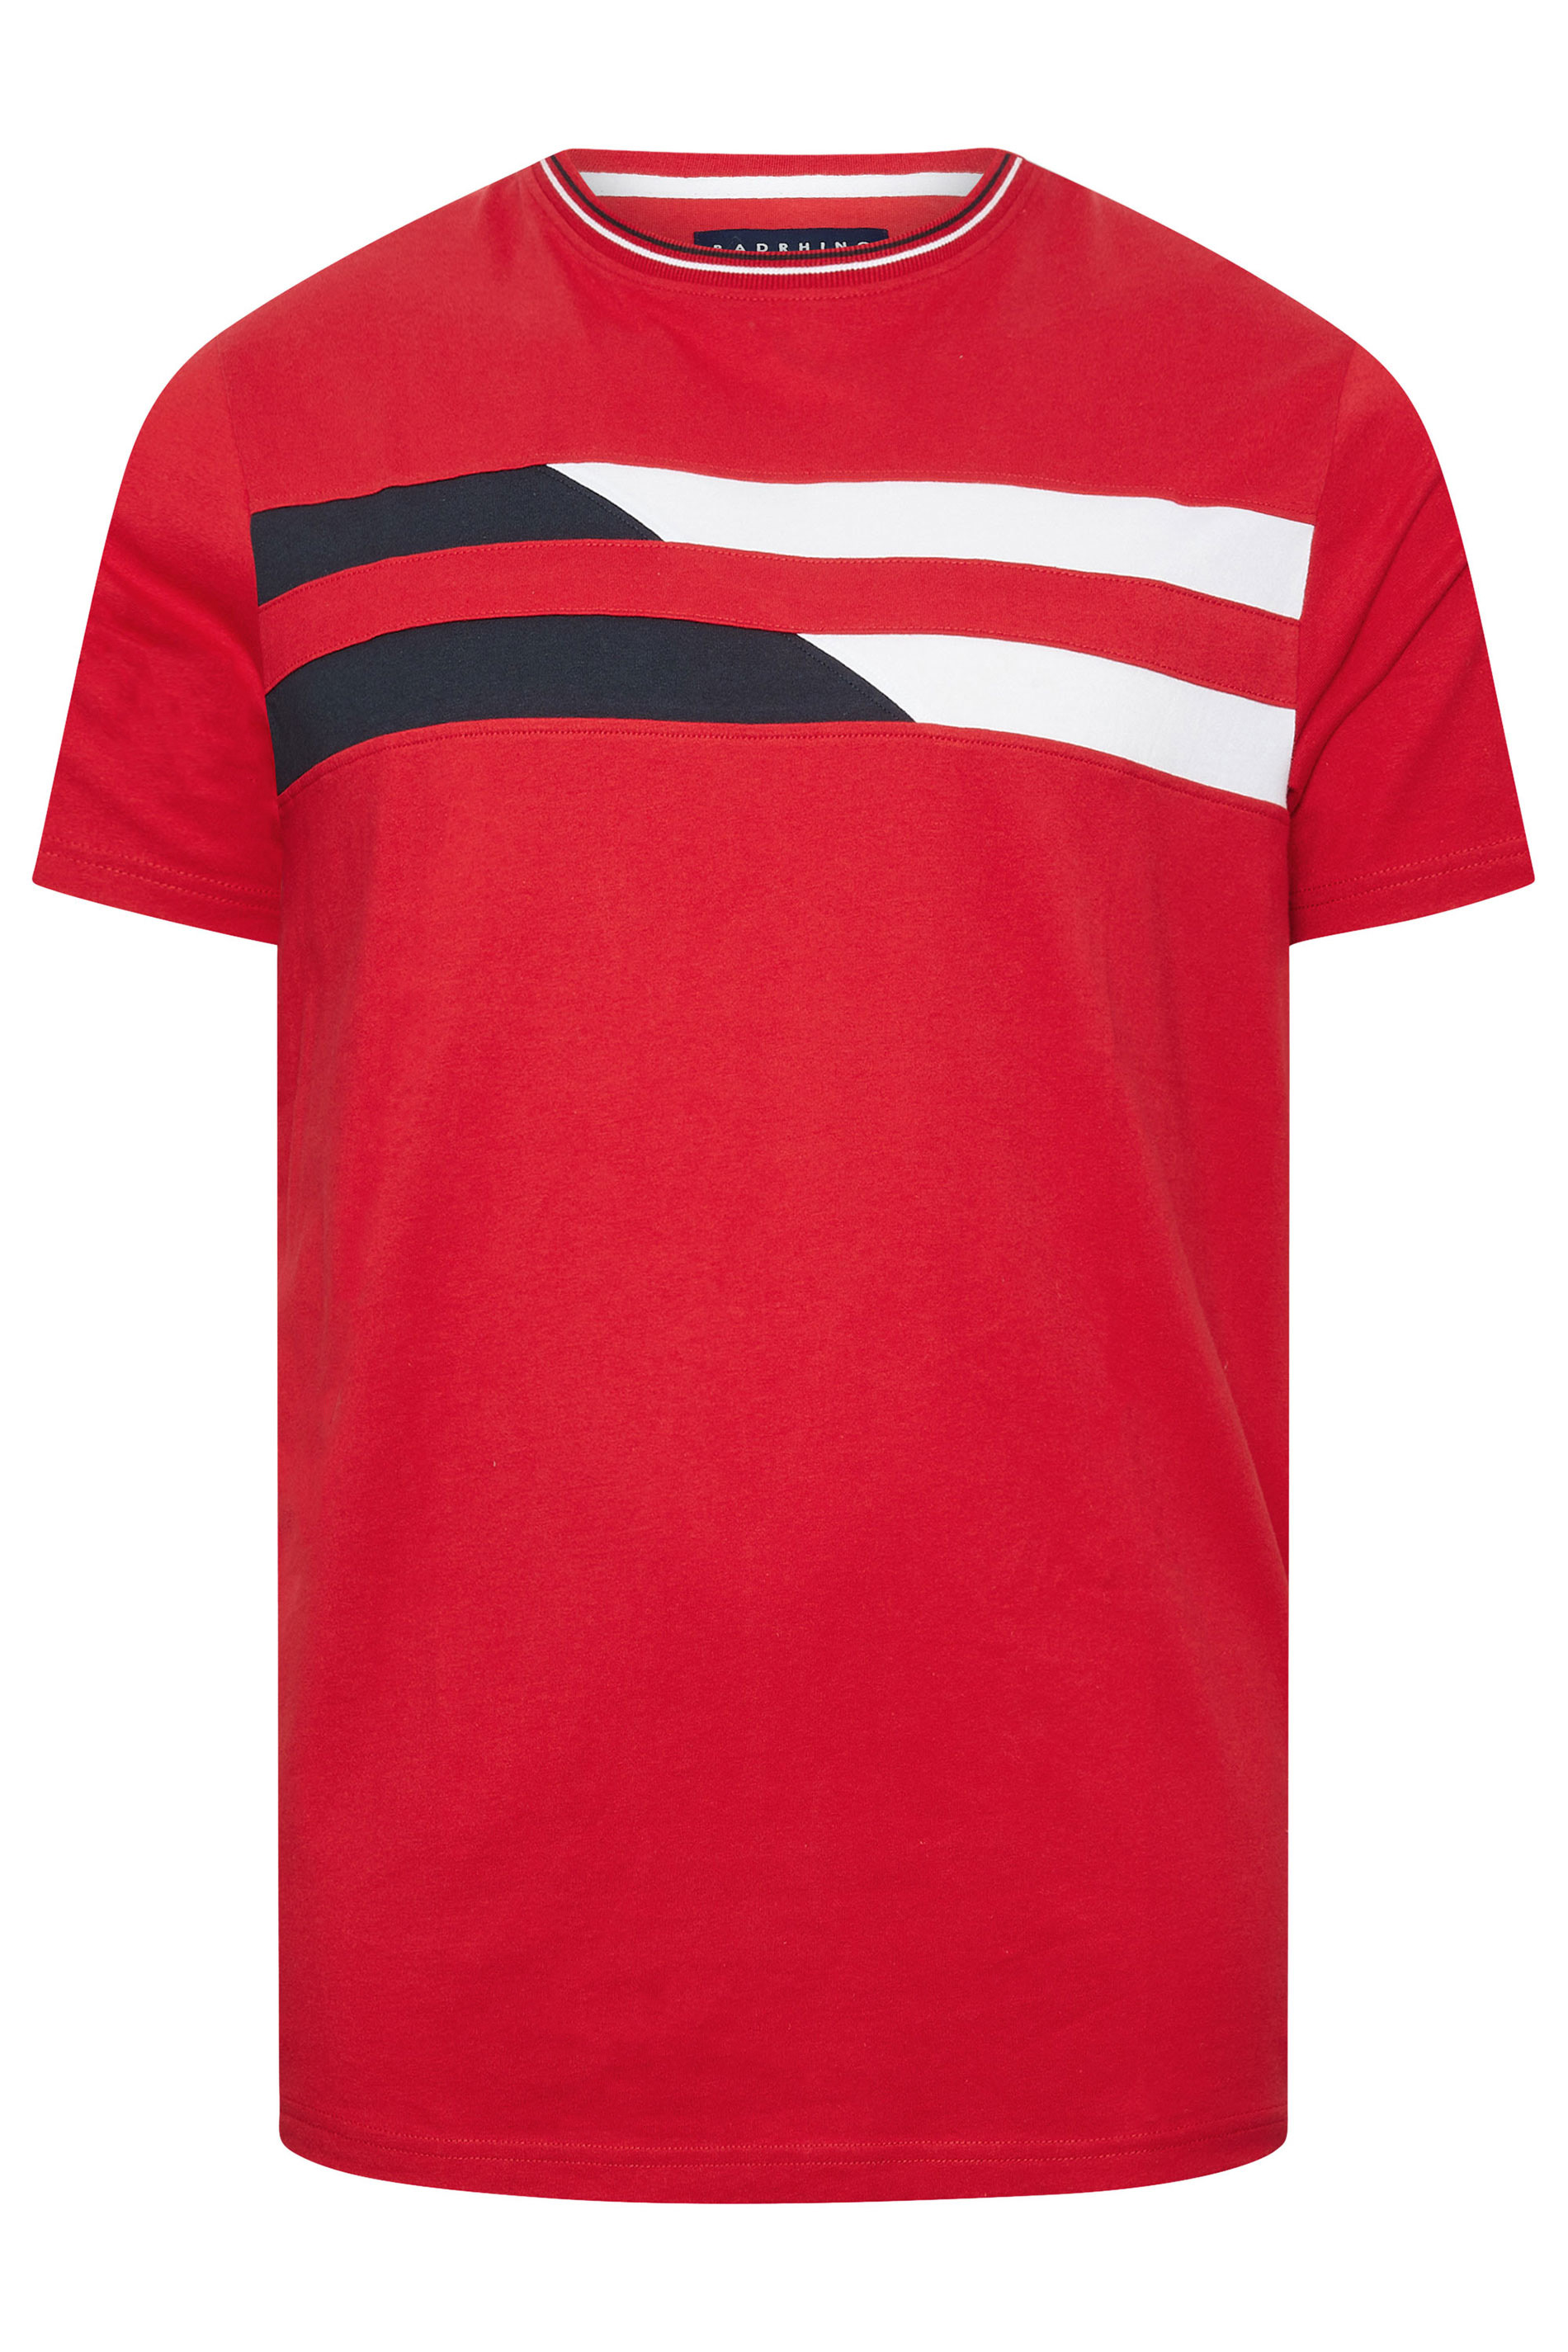 BadRhino Big & Tall Red & White Chest Stripe T-Shirt | BadRhino